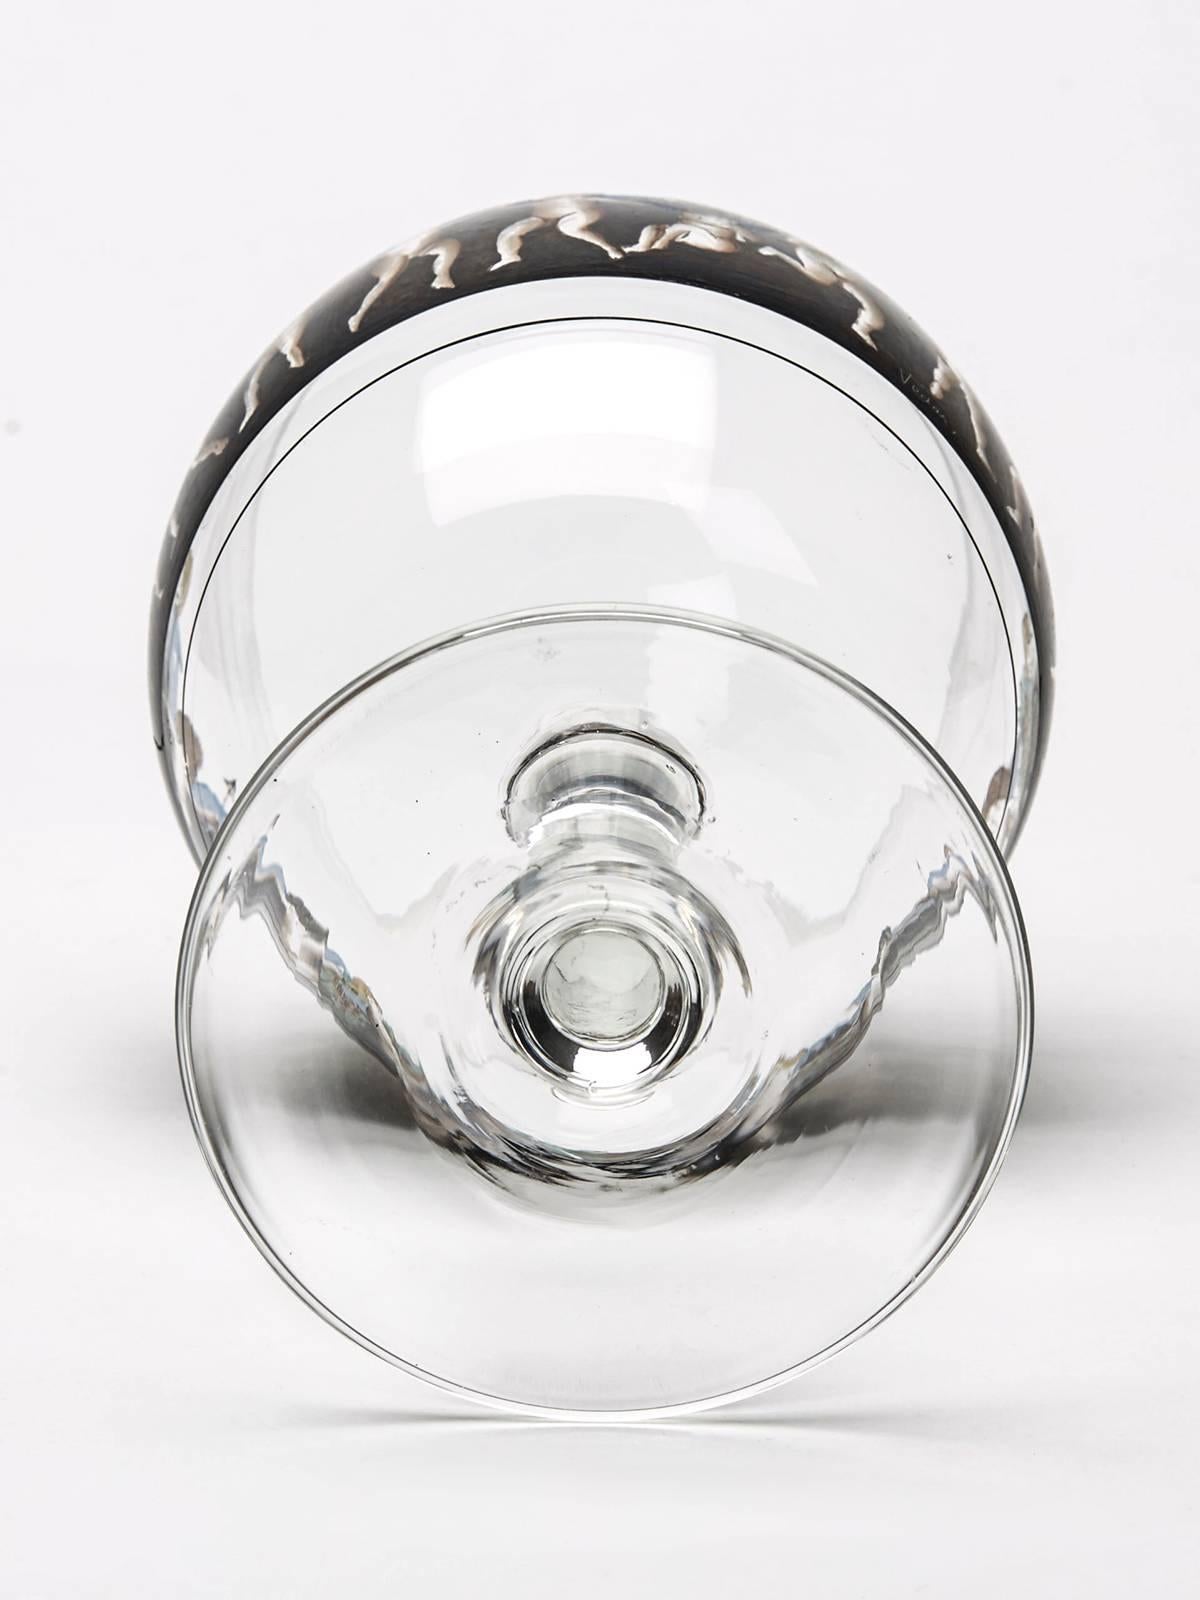 Six Vetri Della Arte Enamelled Glass Goblets, 20th Century For Sale 3